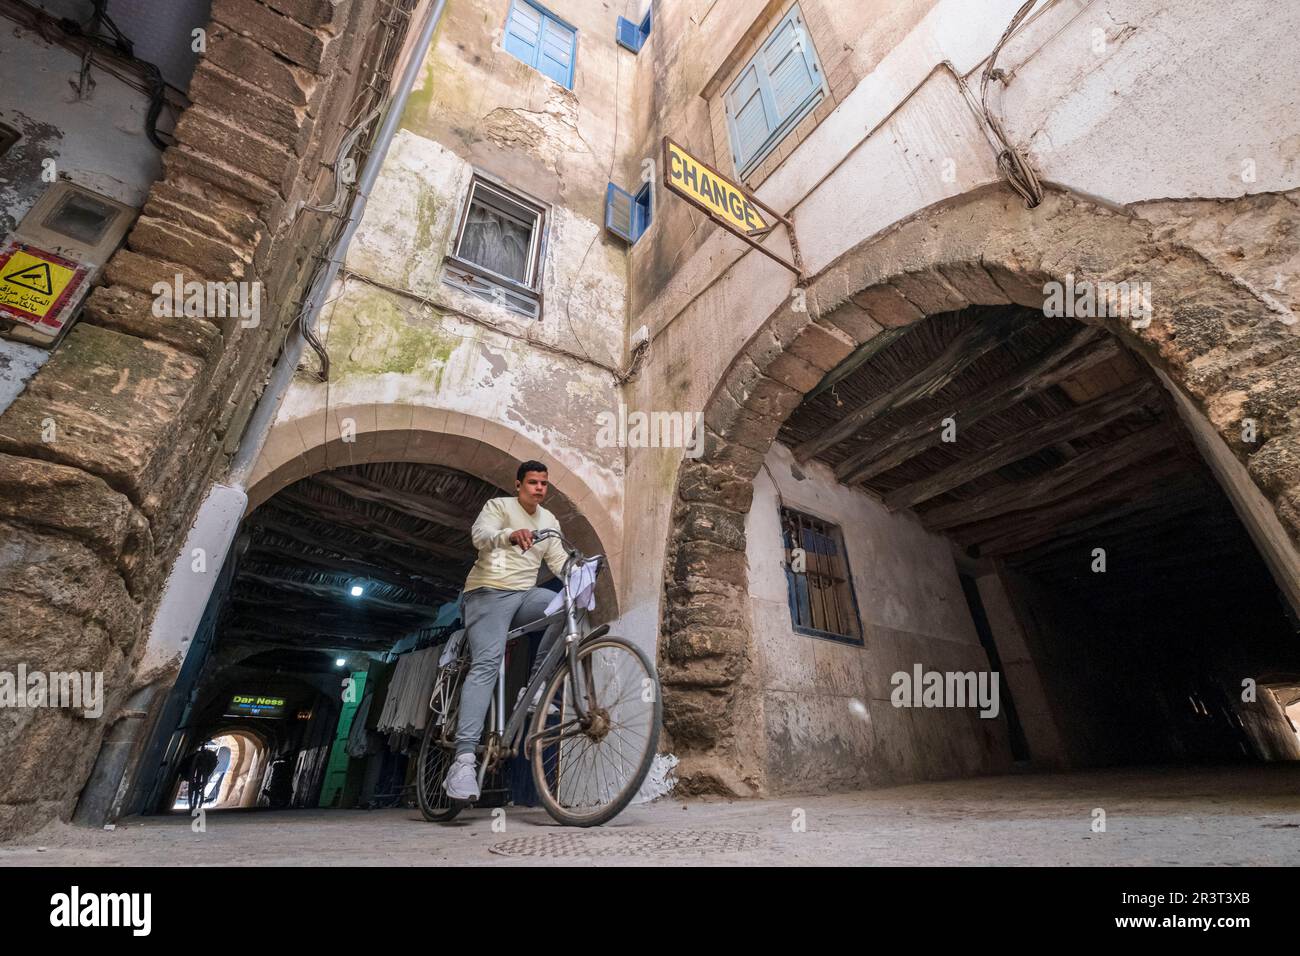 Garçon sur un vélo traversant Skala de la Kasbah, Essaouira, maroc, afrique. Banque D'Images